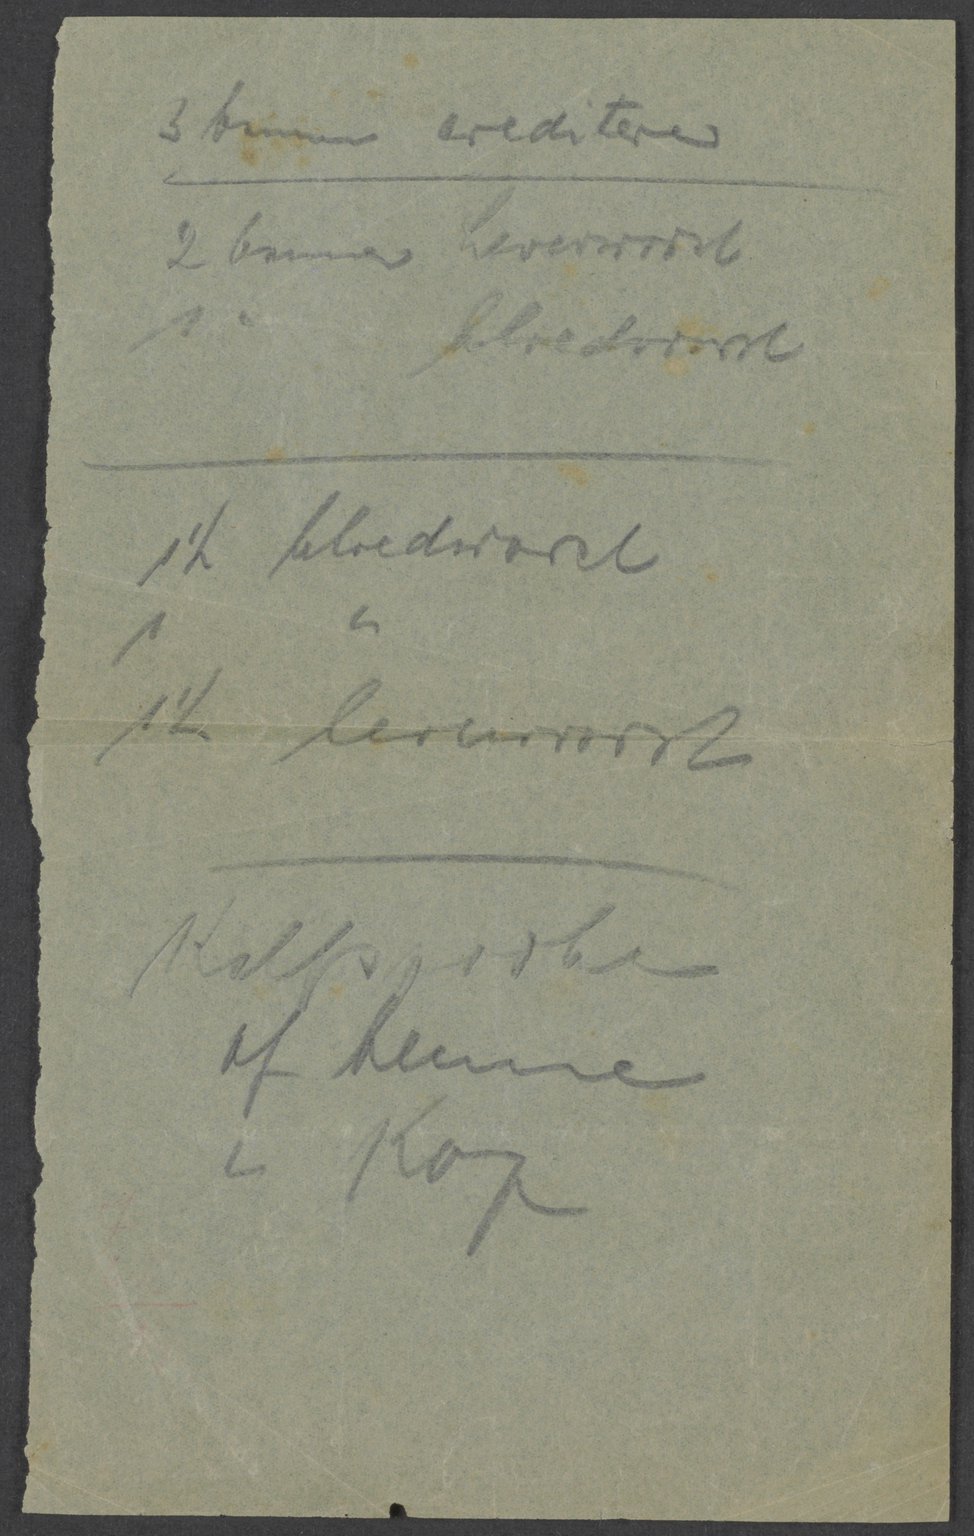 Boodschappenbriefje voor de slager geschreven door Hermann van Pels. Miep Gies vond het na de oorlog in haar jaszak.